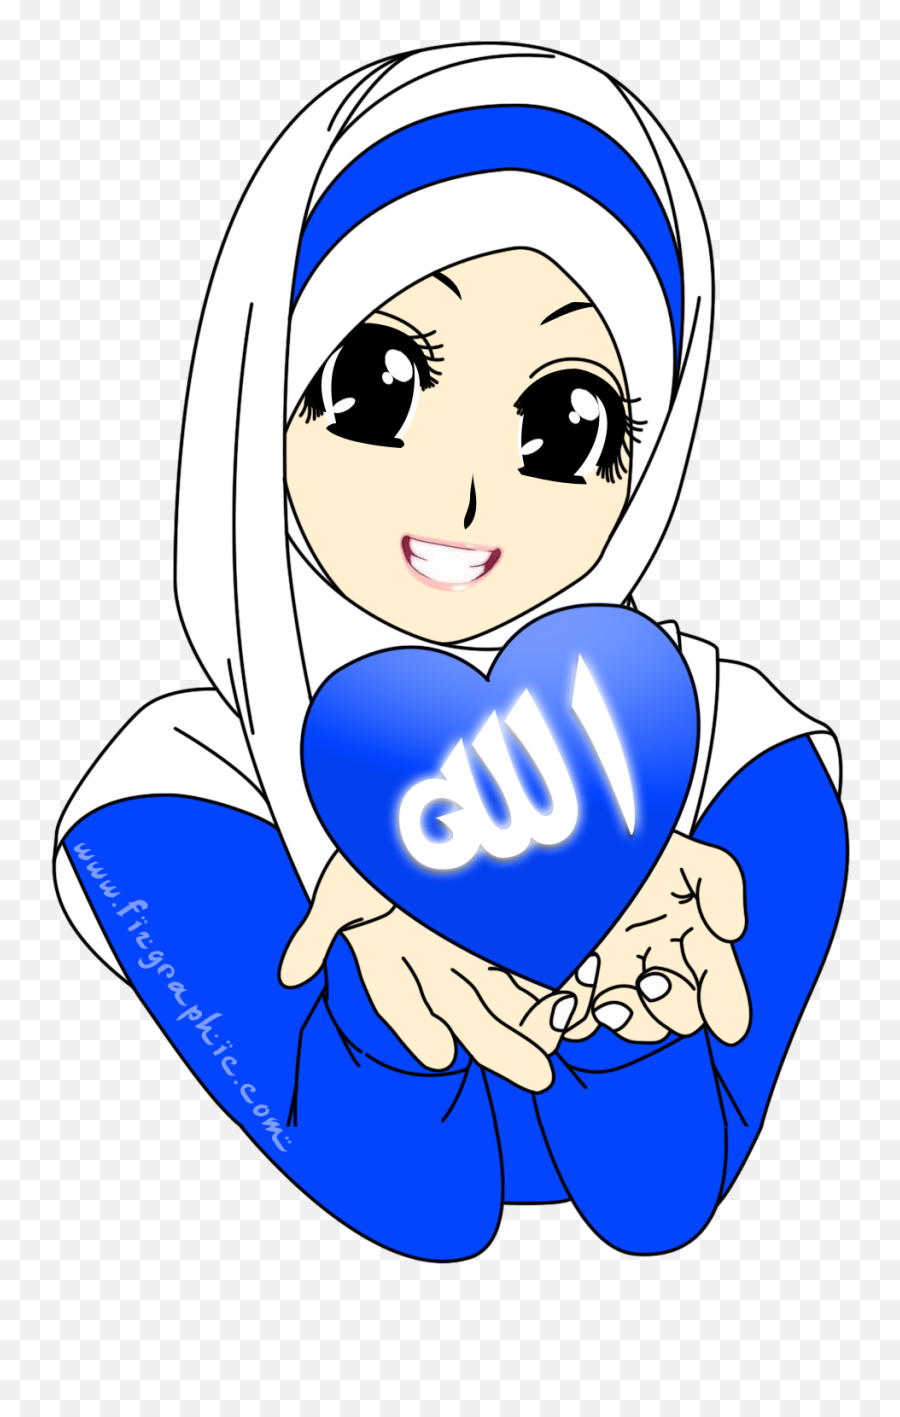 Gambar Kumpulan Dp Bbm Cemburu Terbaru 2015 Gambar Emoticon - Muslimah Cartoon Emoji,Kumpulan Emoticon Blackberry